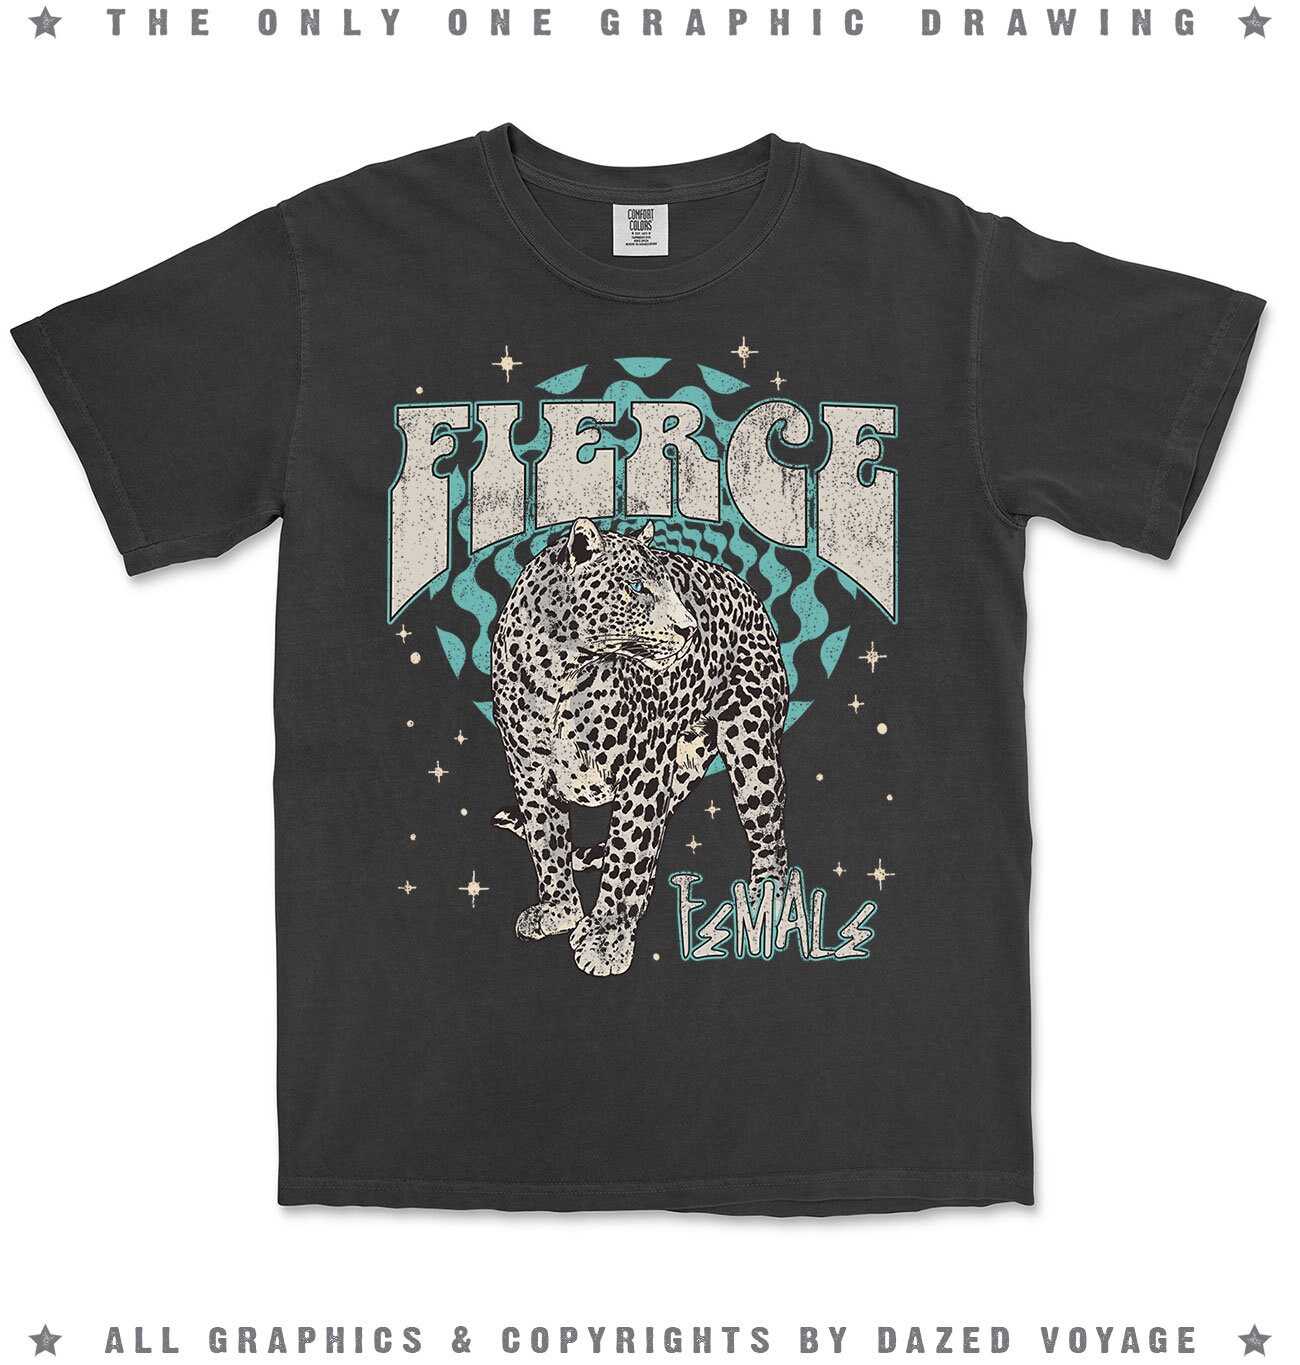 Discover Fierce T-Shirt, Leopard Shirt, Retro Tee, Vintage Tee, Cool Shirt, Leopard, Motivational Shirt, Girl Power Shirt, Comfort Colors T-shirt